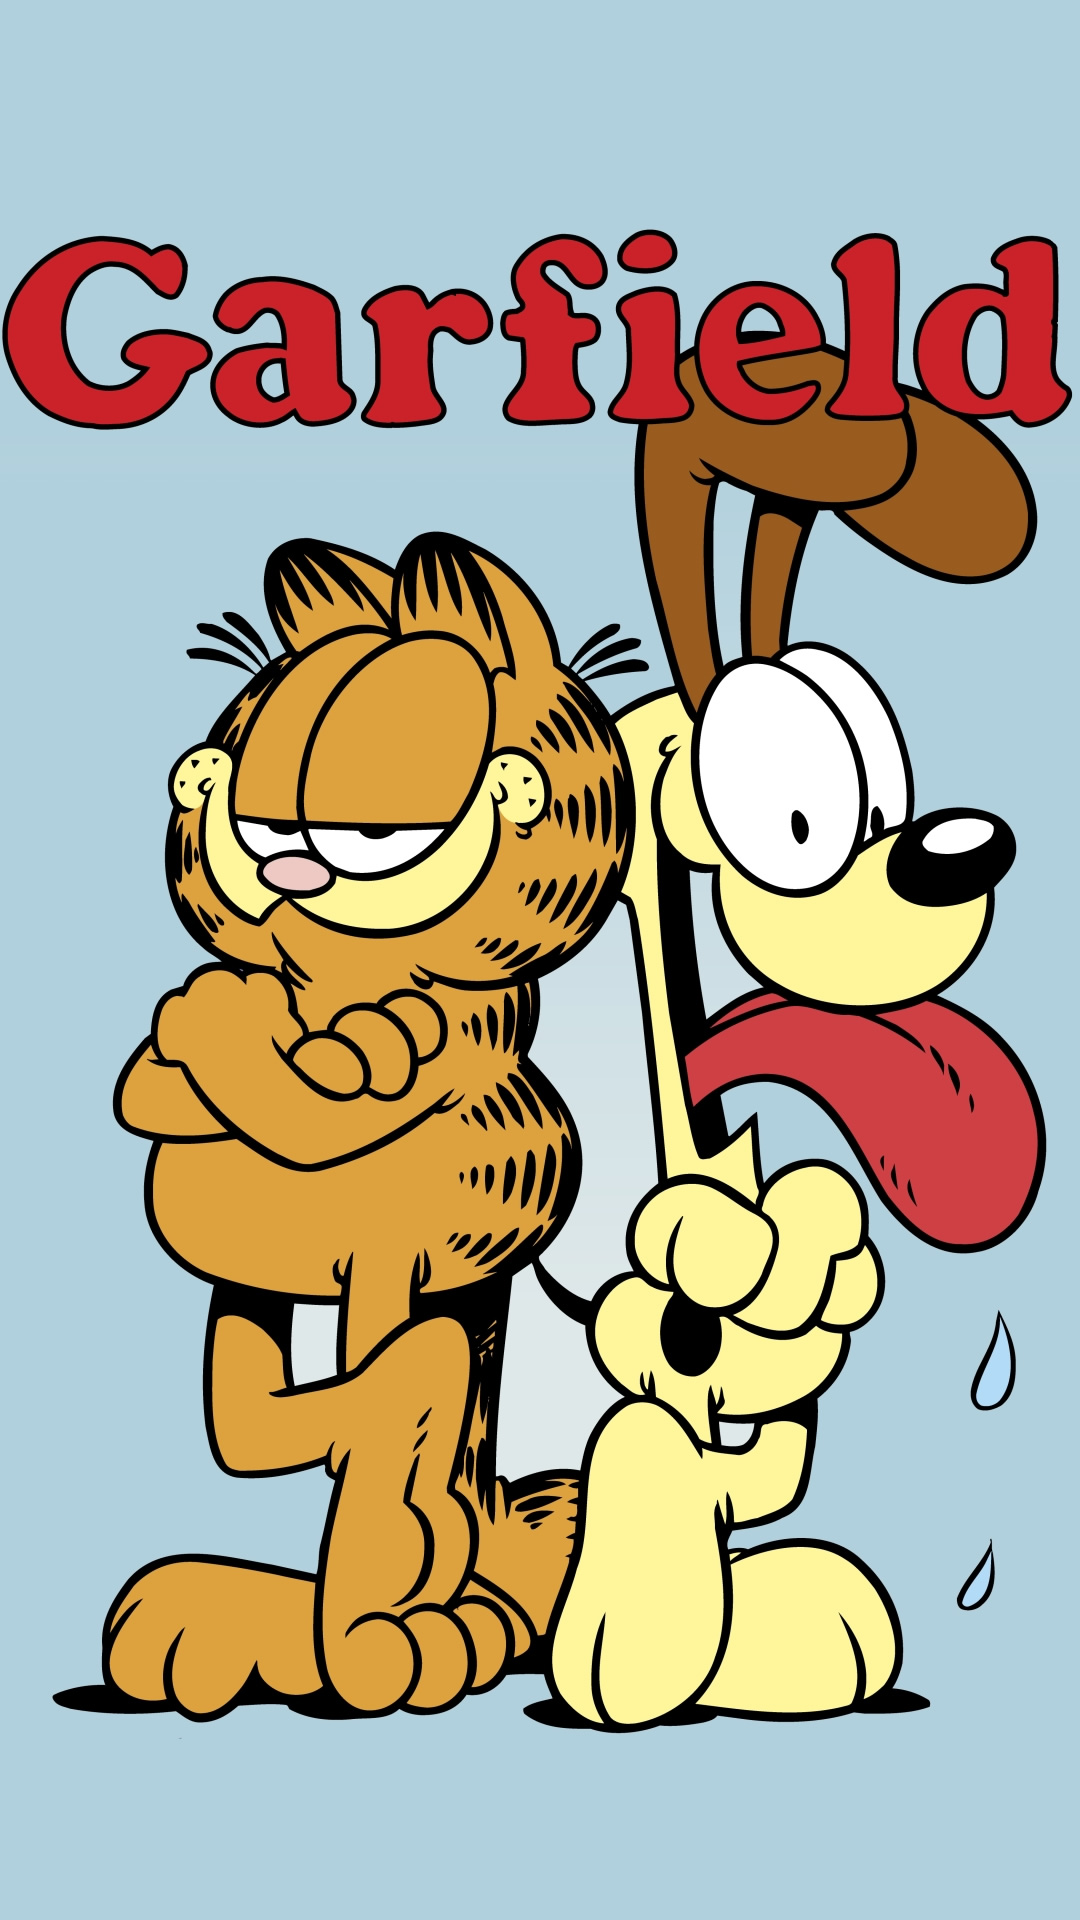 ガーフィールド Garfield 漫画の無料壁紙 1080 1920 Iphoneチーズ